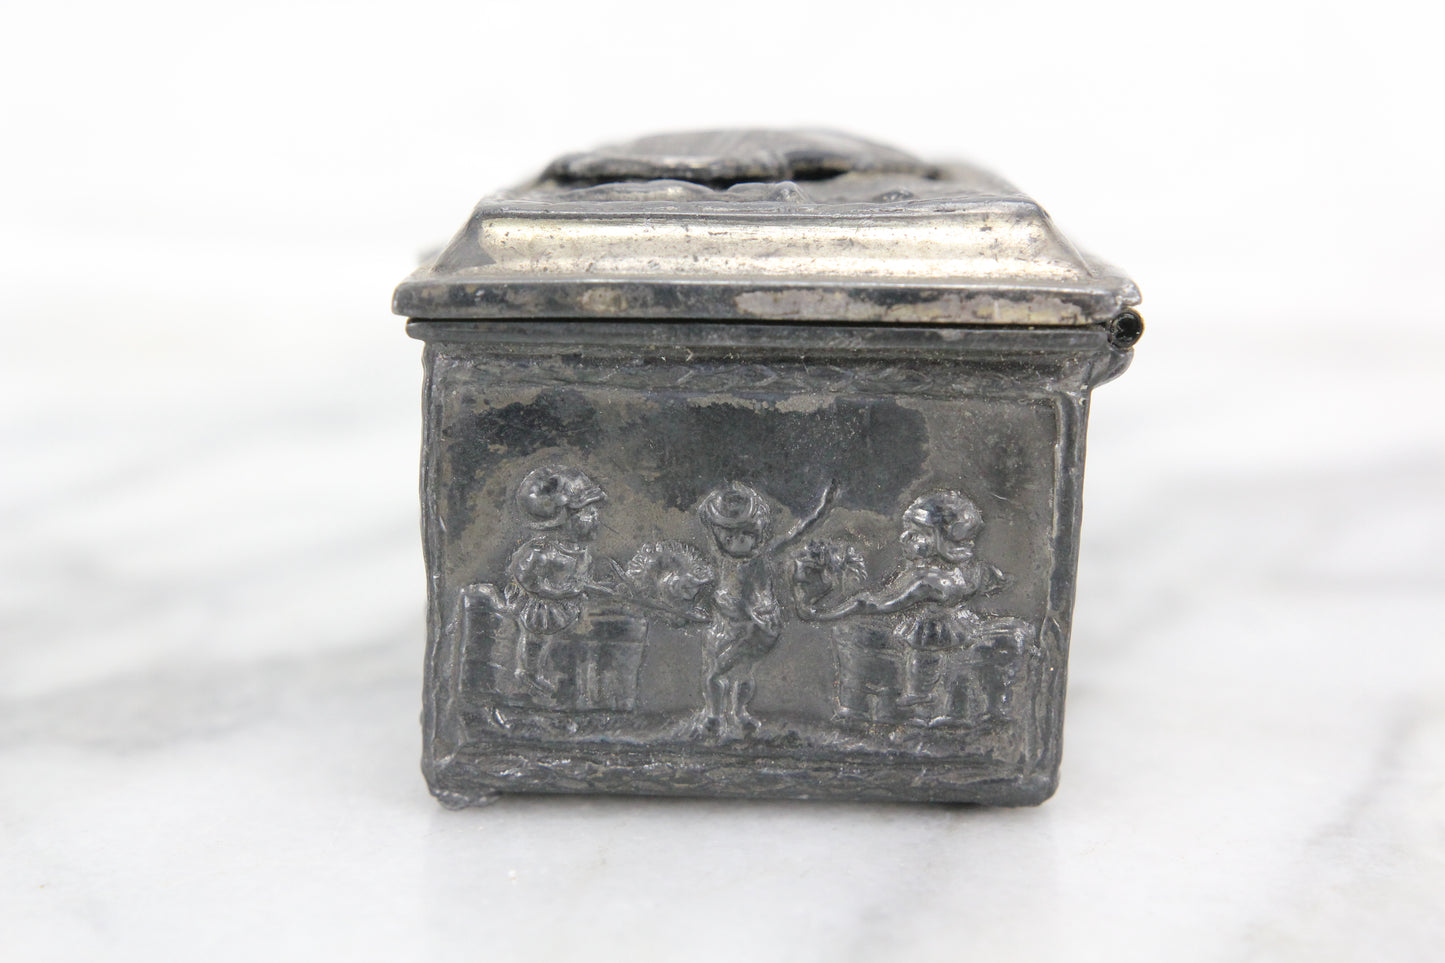 Metal Keepsake Ring Box with Washington's Mansion, Mount Vernon